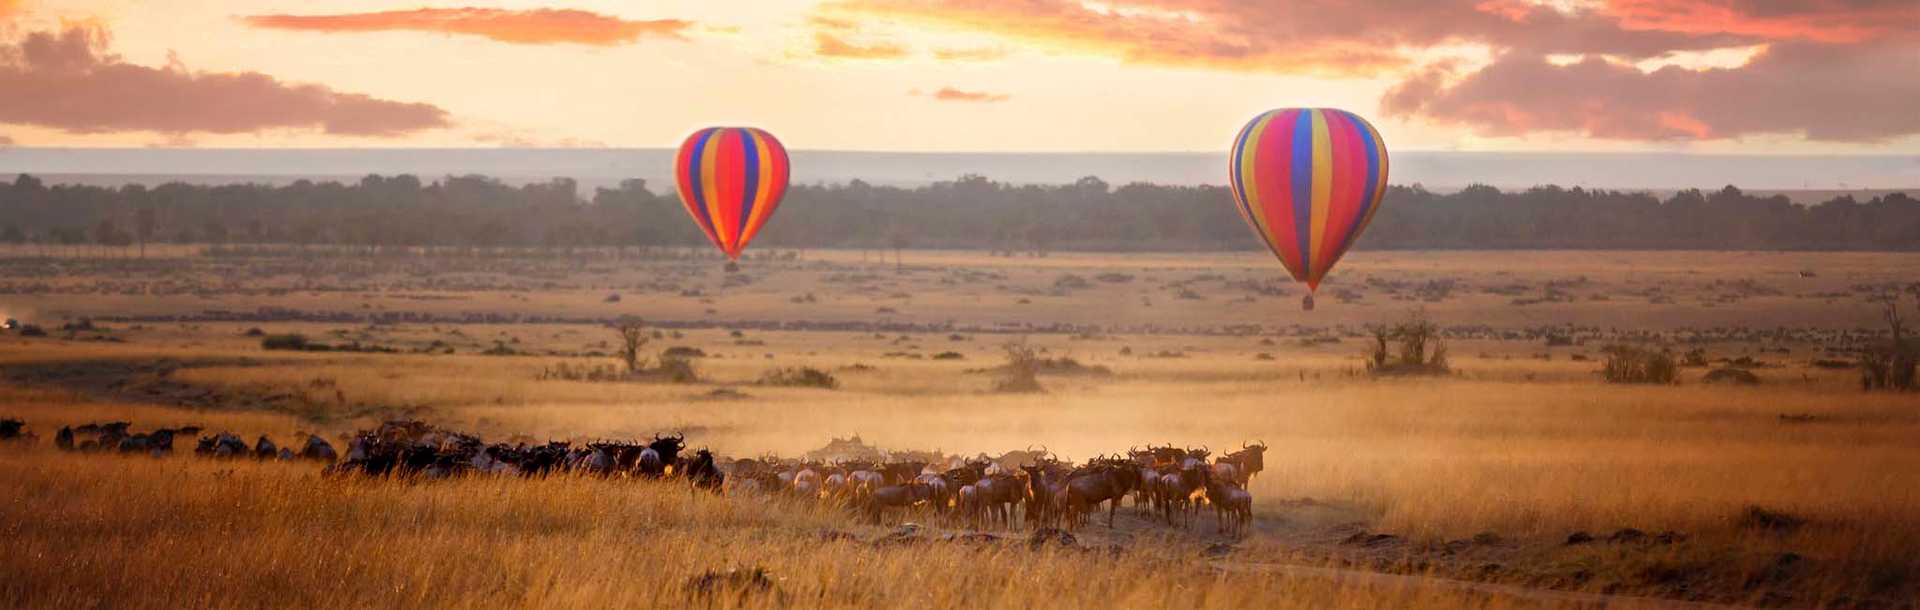 Hot air balloons flying over wildebeests at dawn in Masai Mara, Kenya